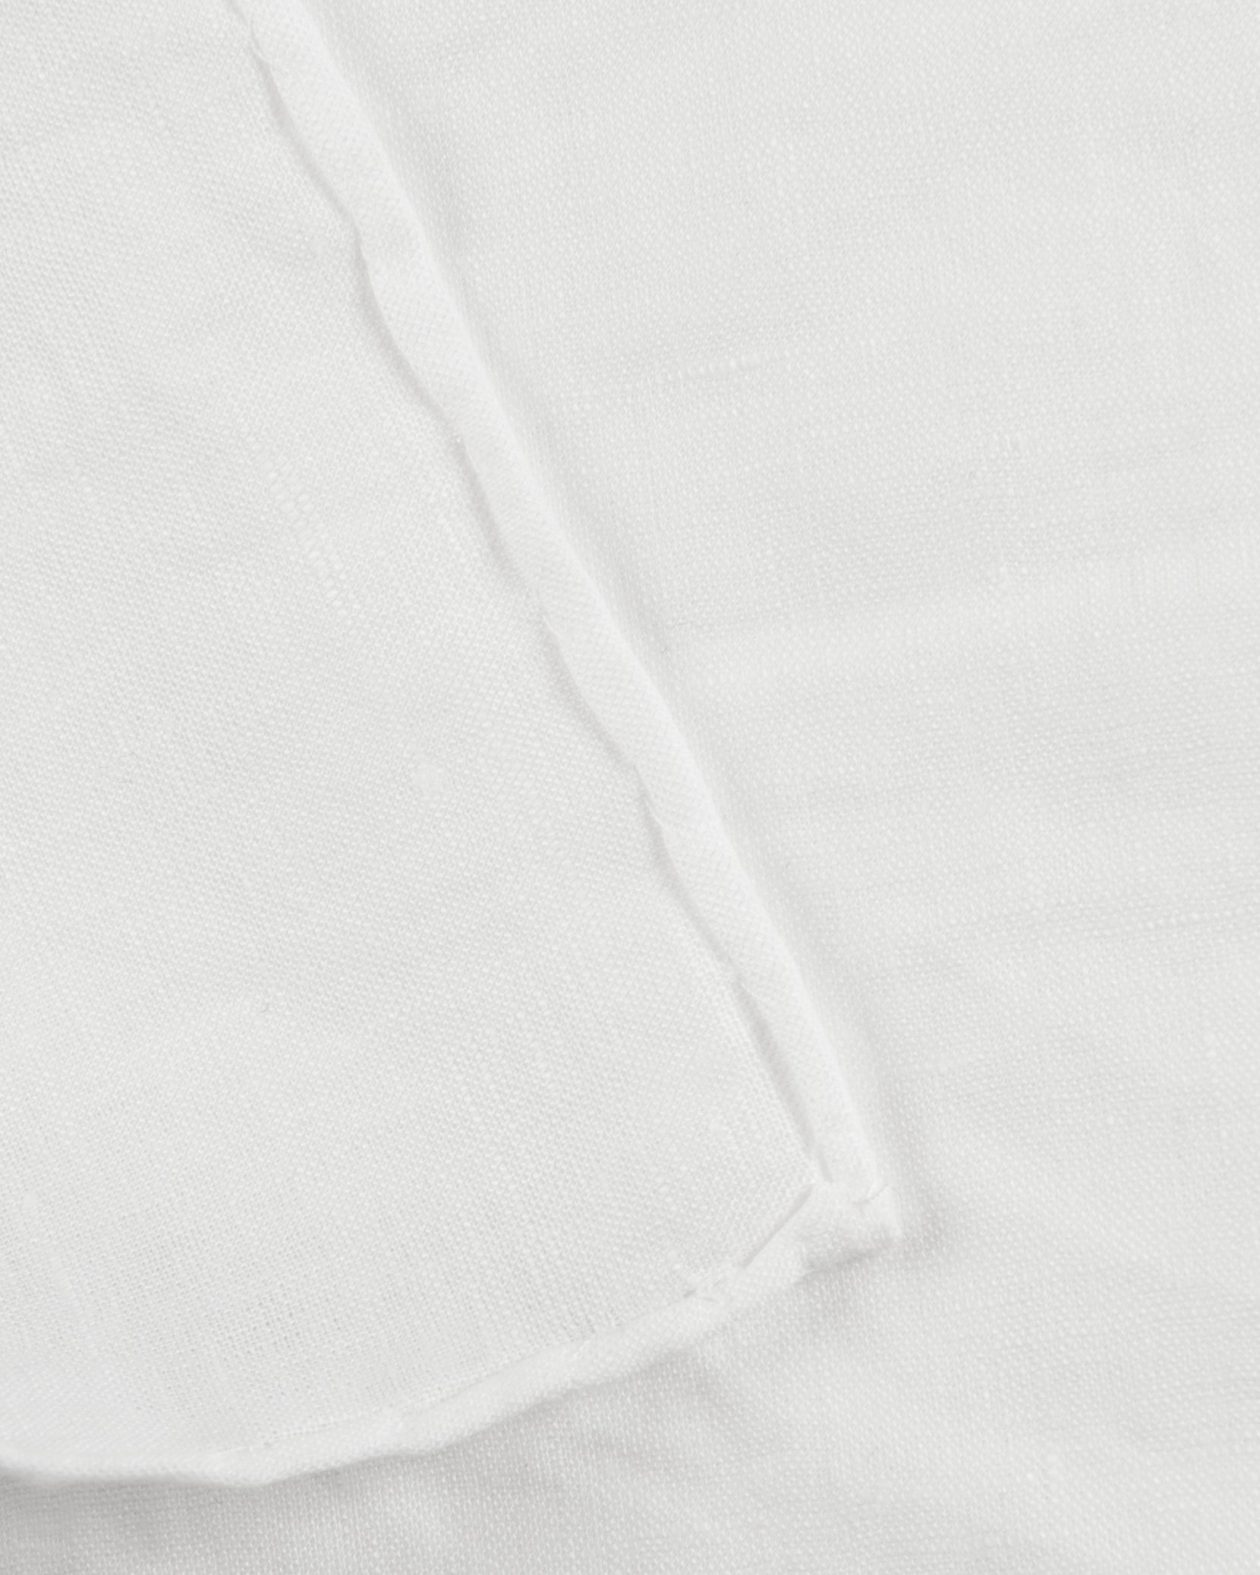 Linen Pocket Square White